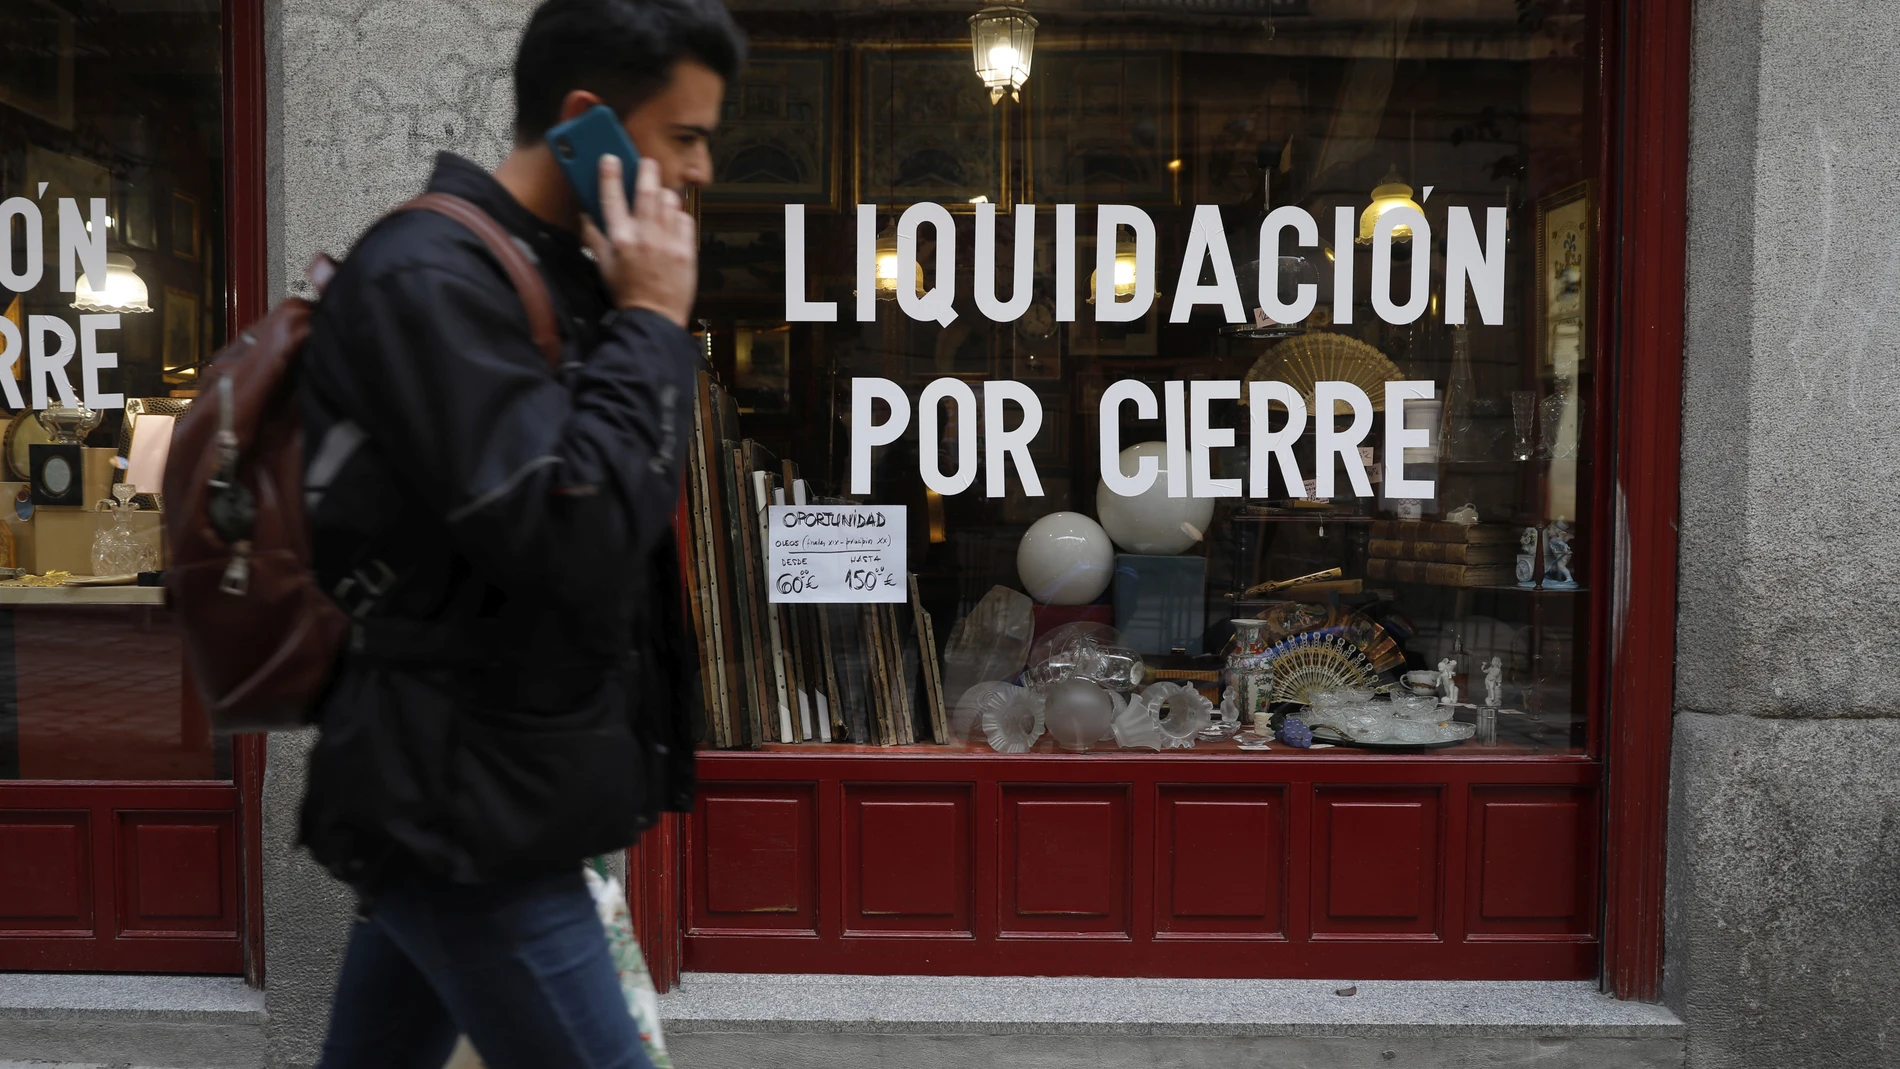 Imagen de un escaparte en el que se puede leer "liquidación por cierre", en Madrid